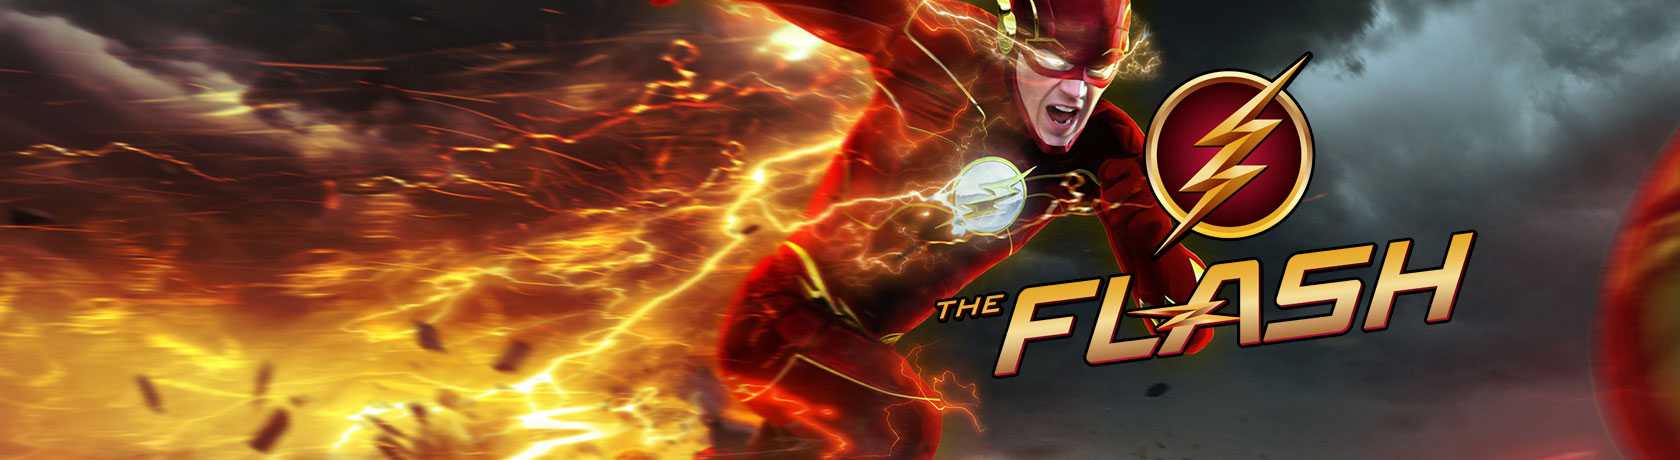 The Flash 8.Sezon 20.Bölüm izle